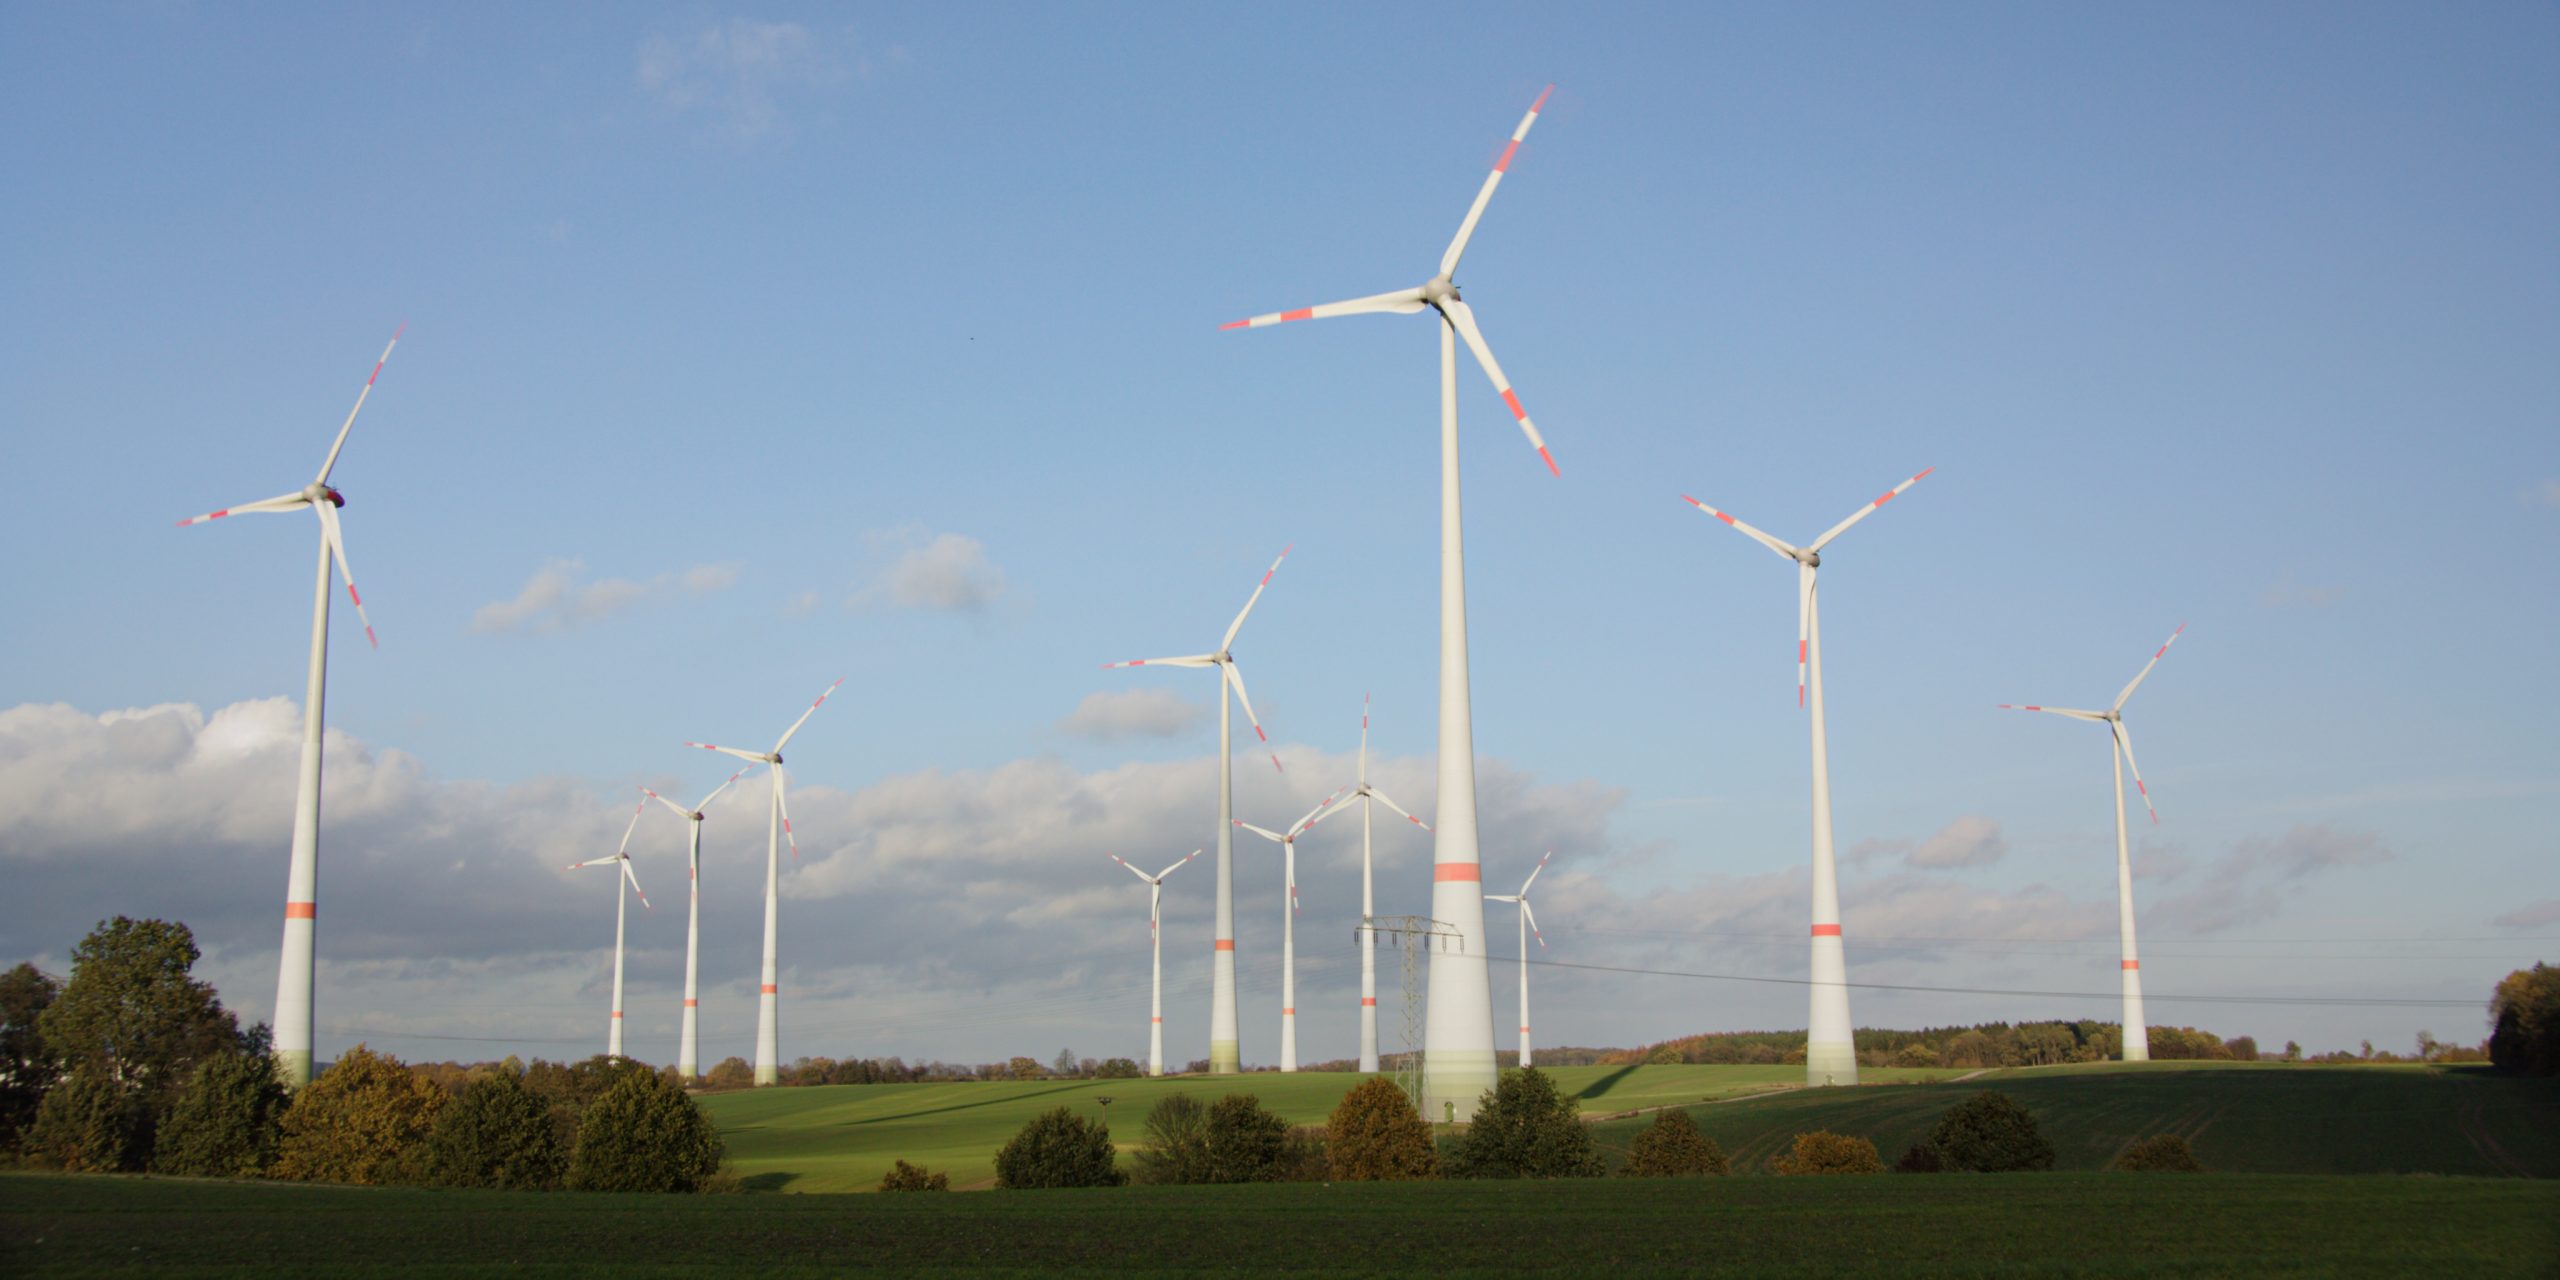 Foto des Windparks in Dassow, Windpark Schönberg. Mehrere Windräder auf Wiese mit Bäumen und blauem, leicht bewölktem Himmel.